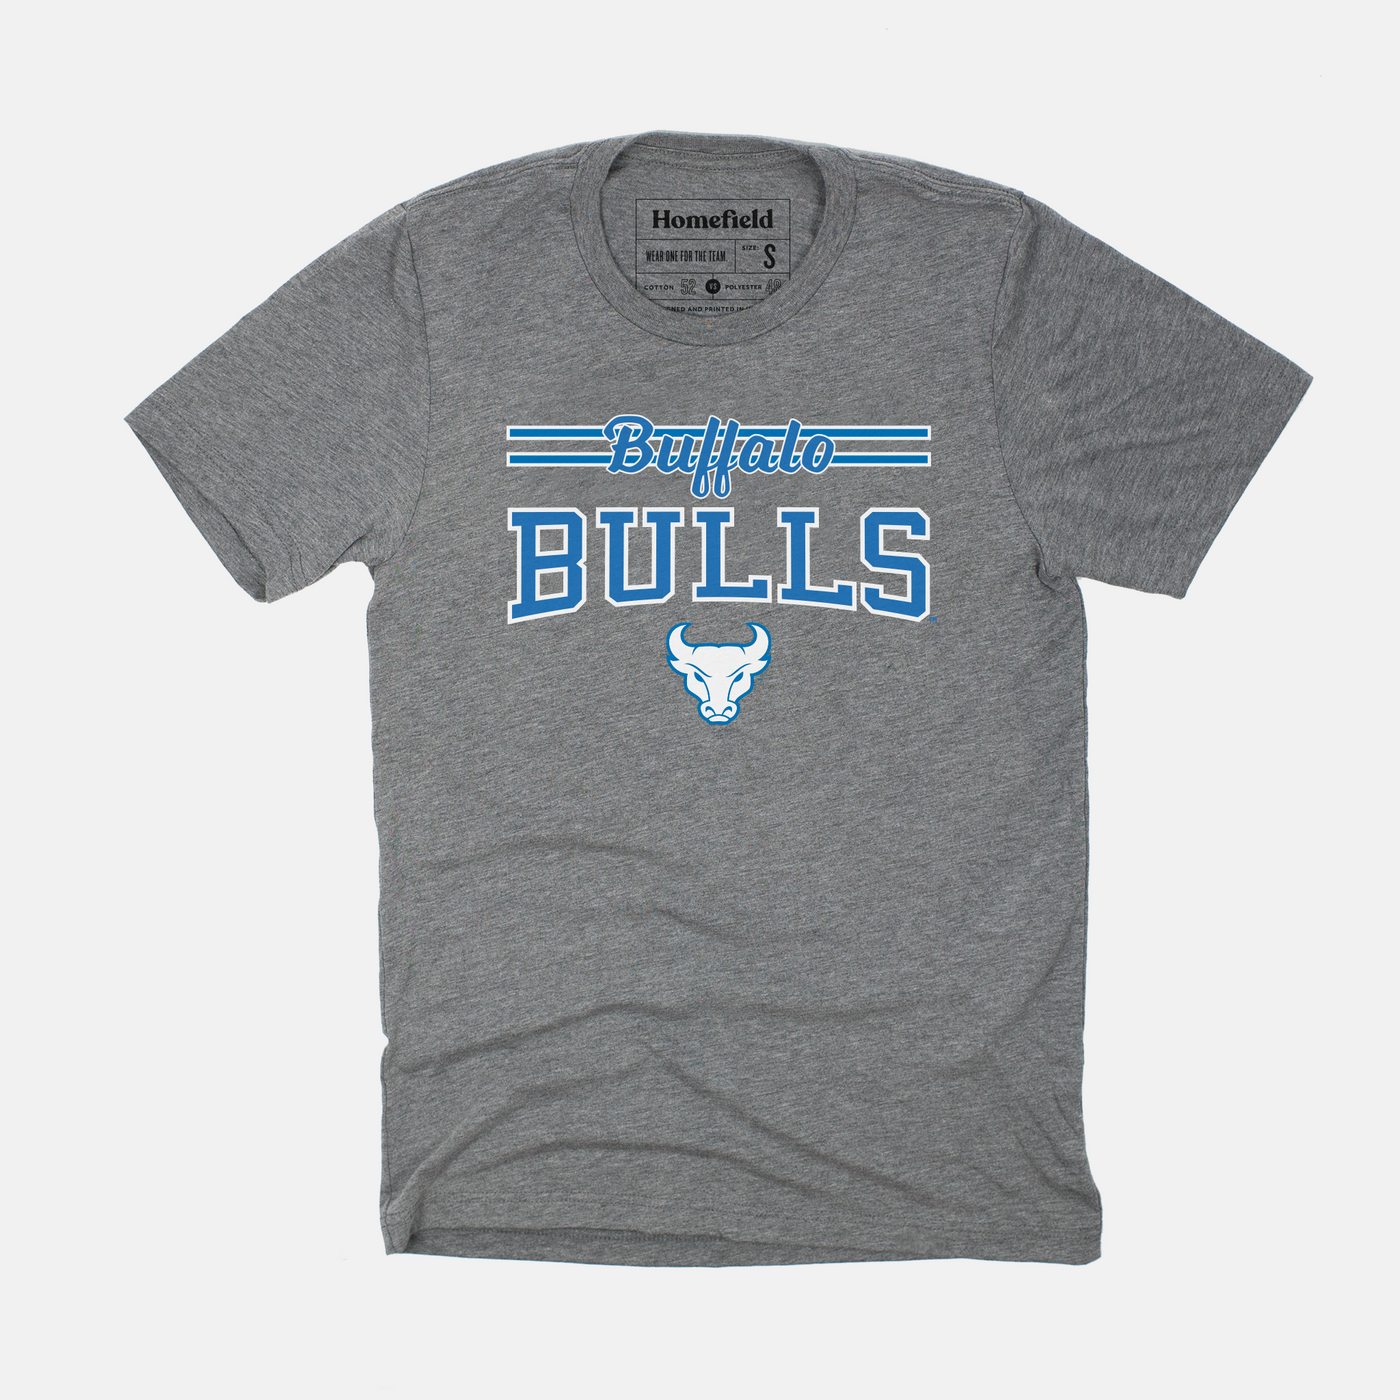 Buffalo Bulls Tee